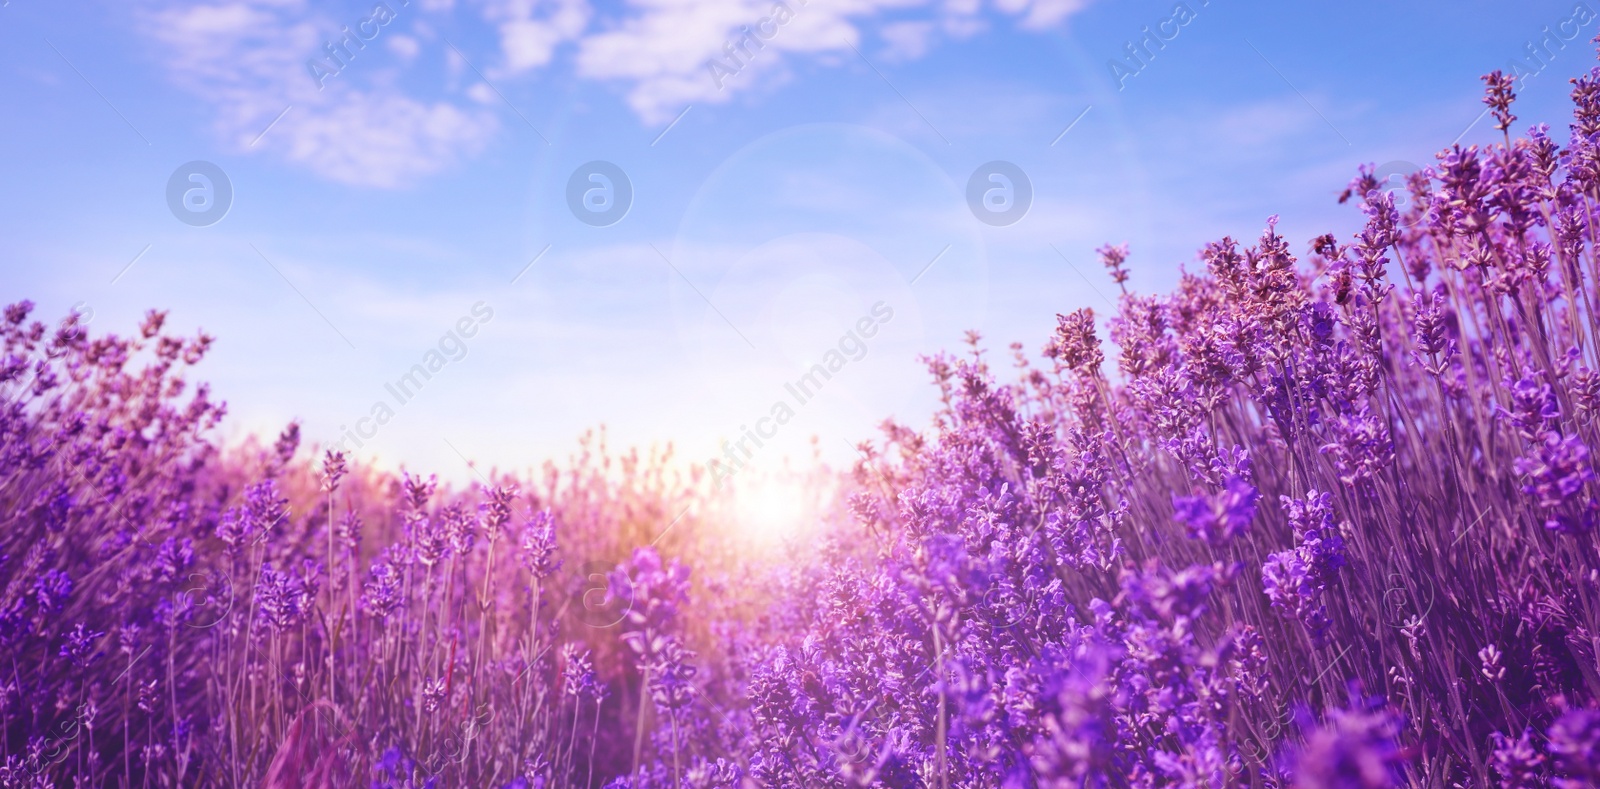 Image of Sunlit lavender field under blue sky, banner design  